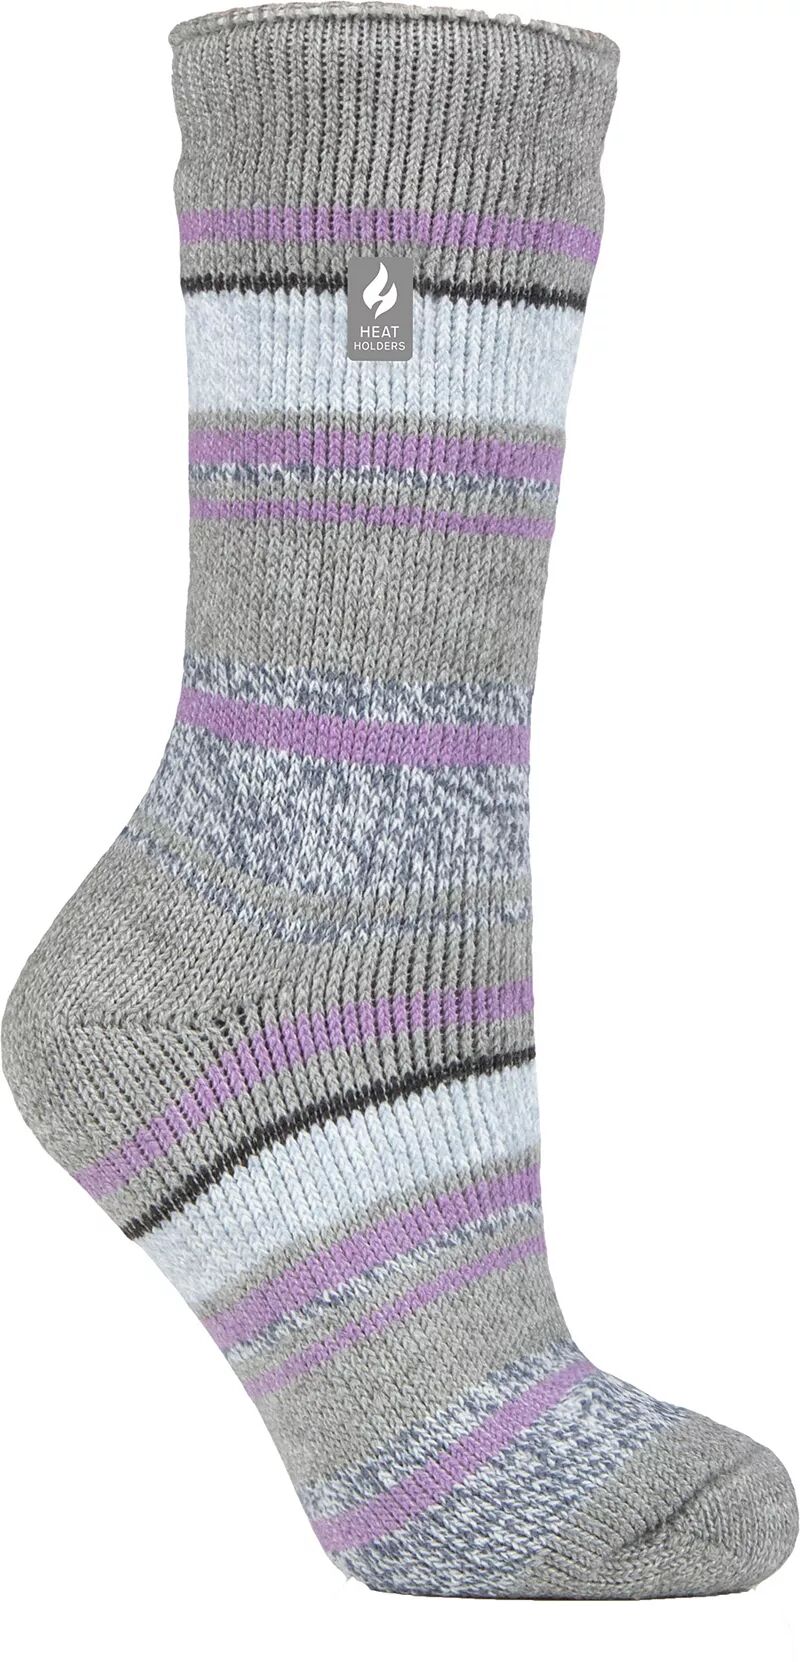 Женские носки Heat Holders Yasmine с разноцветными полосками, серый